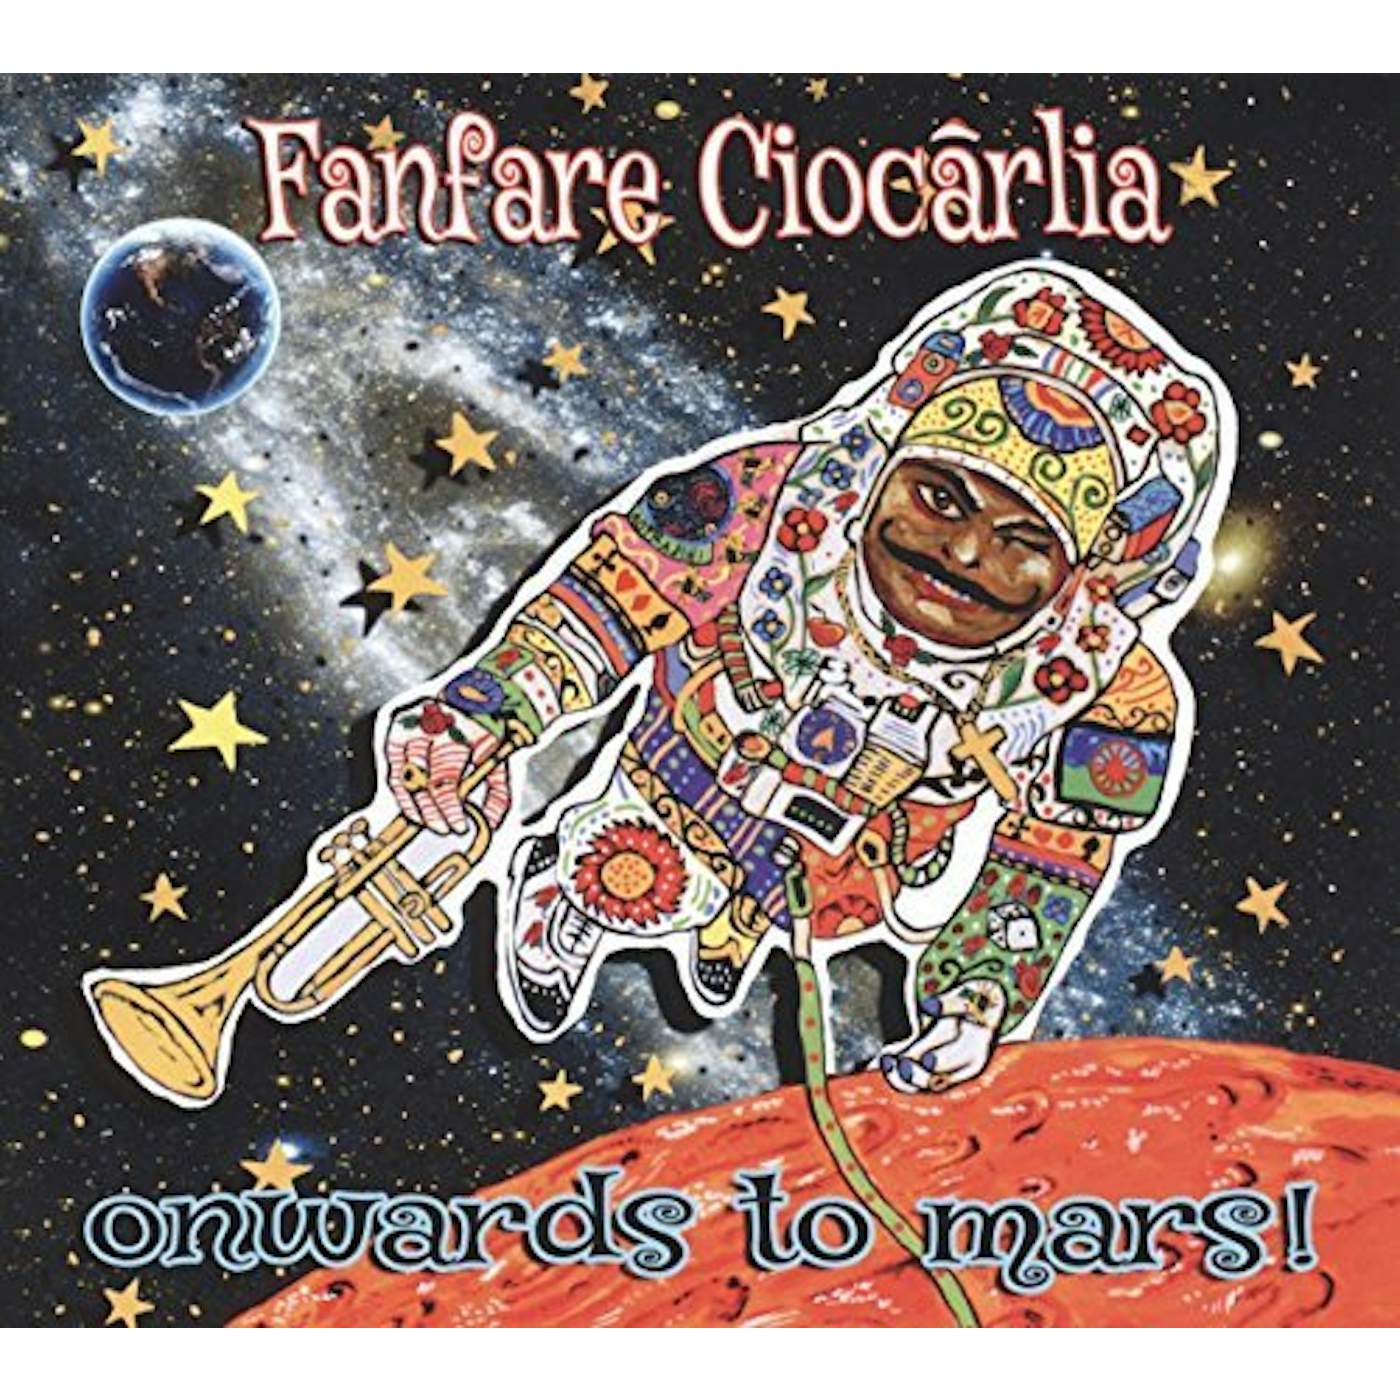 Fanfare Ciocarlia Onwards to mars Vinyl Record